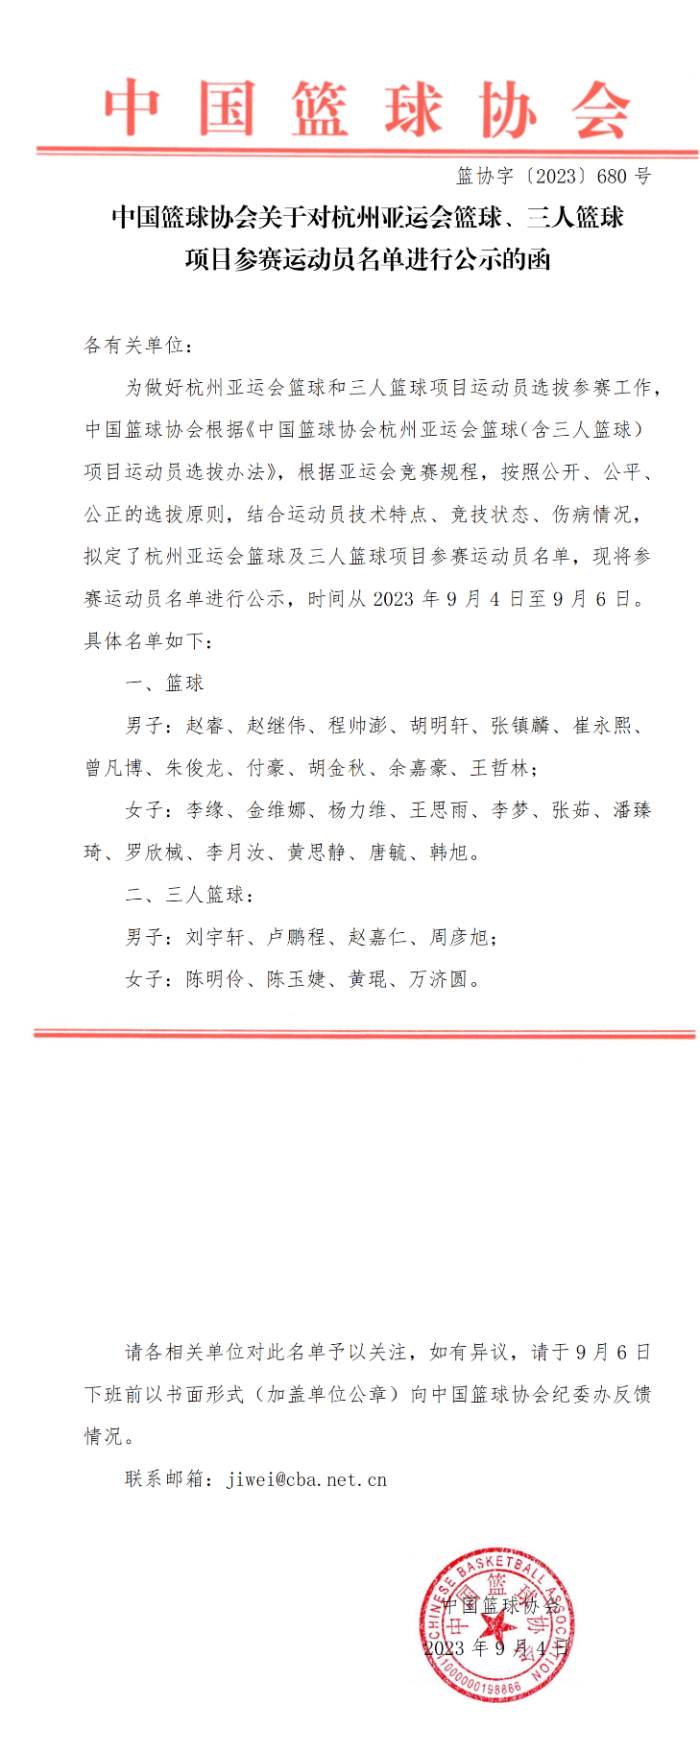 中国篮协公示杭州亚运会篮球项目参赛运动员名单